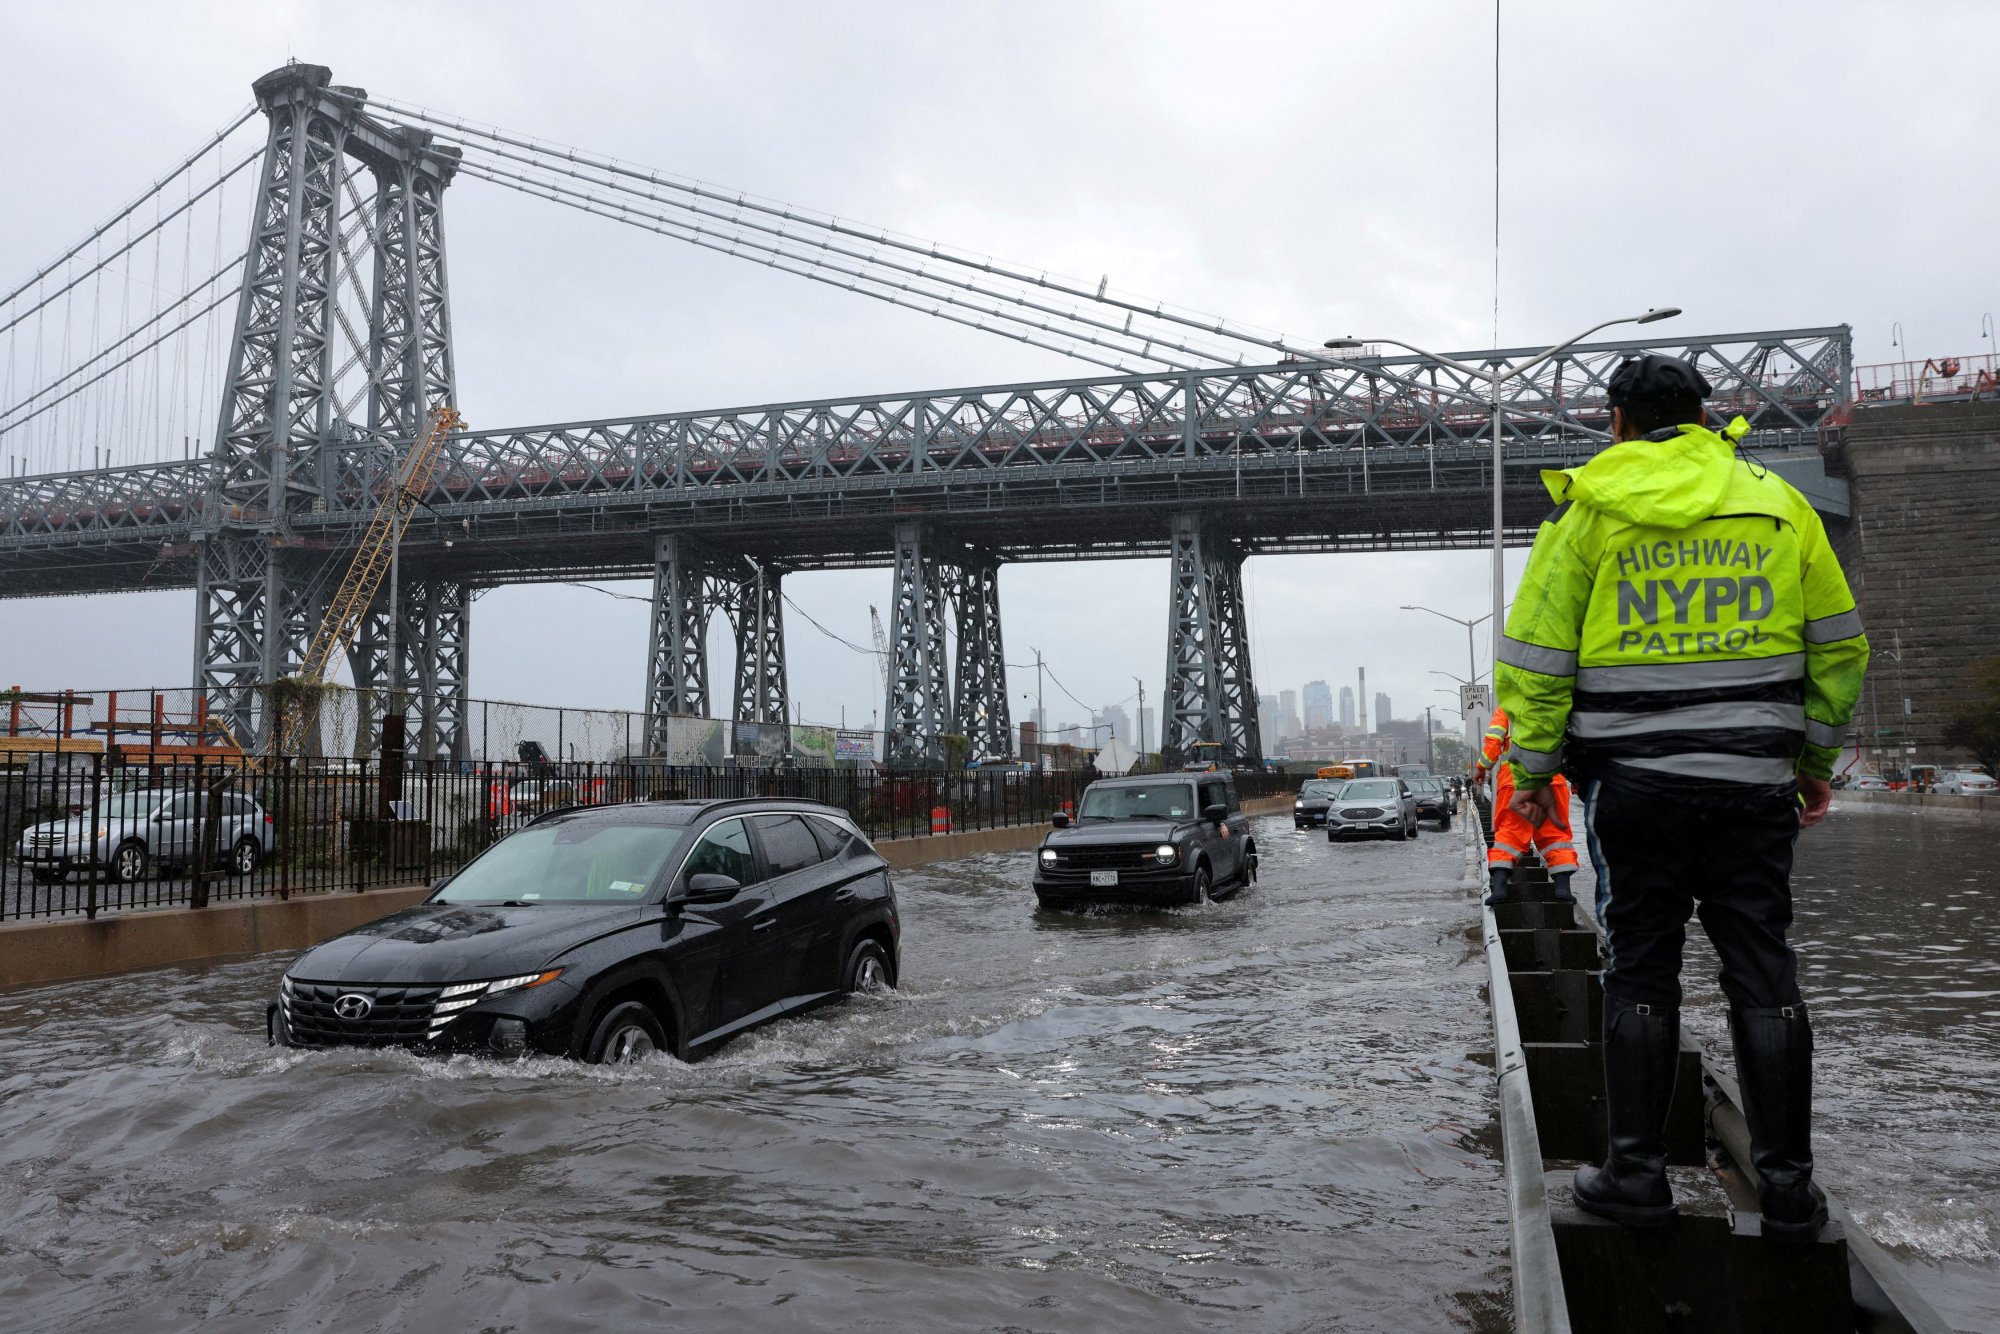 Συναγερμός στην Νέα Υόρκη μετά τις πλημμύρες: Βροχή ενός μήνα έπεσε μέσα σε 3 ώρες